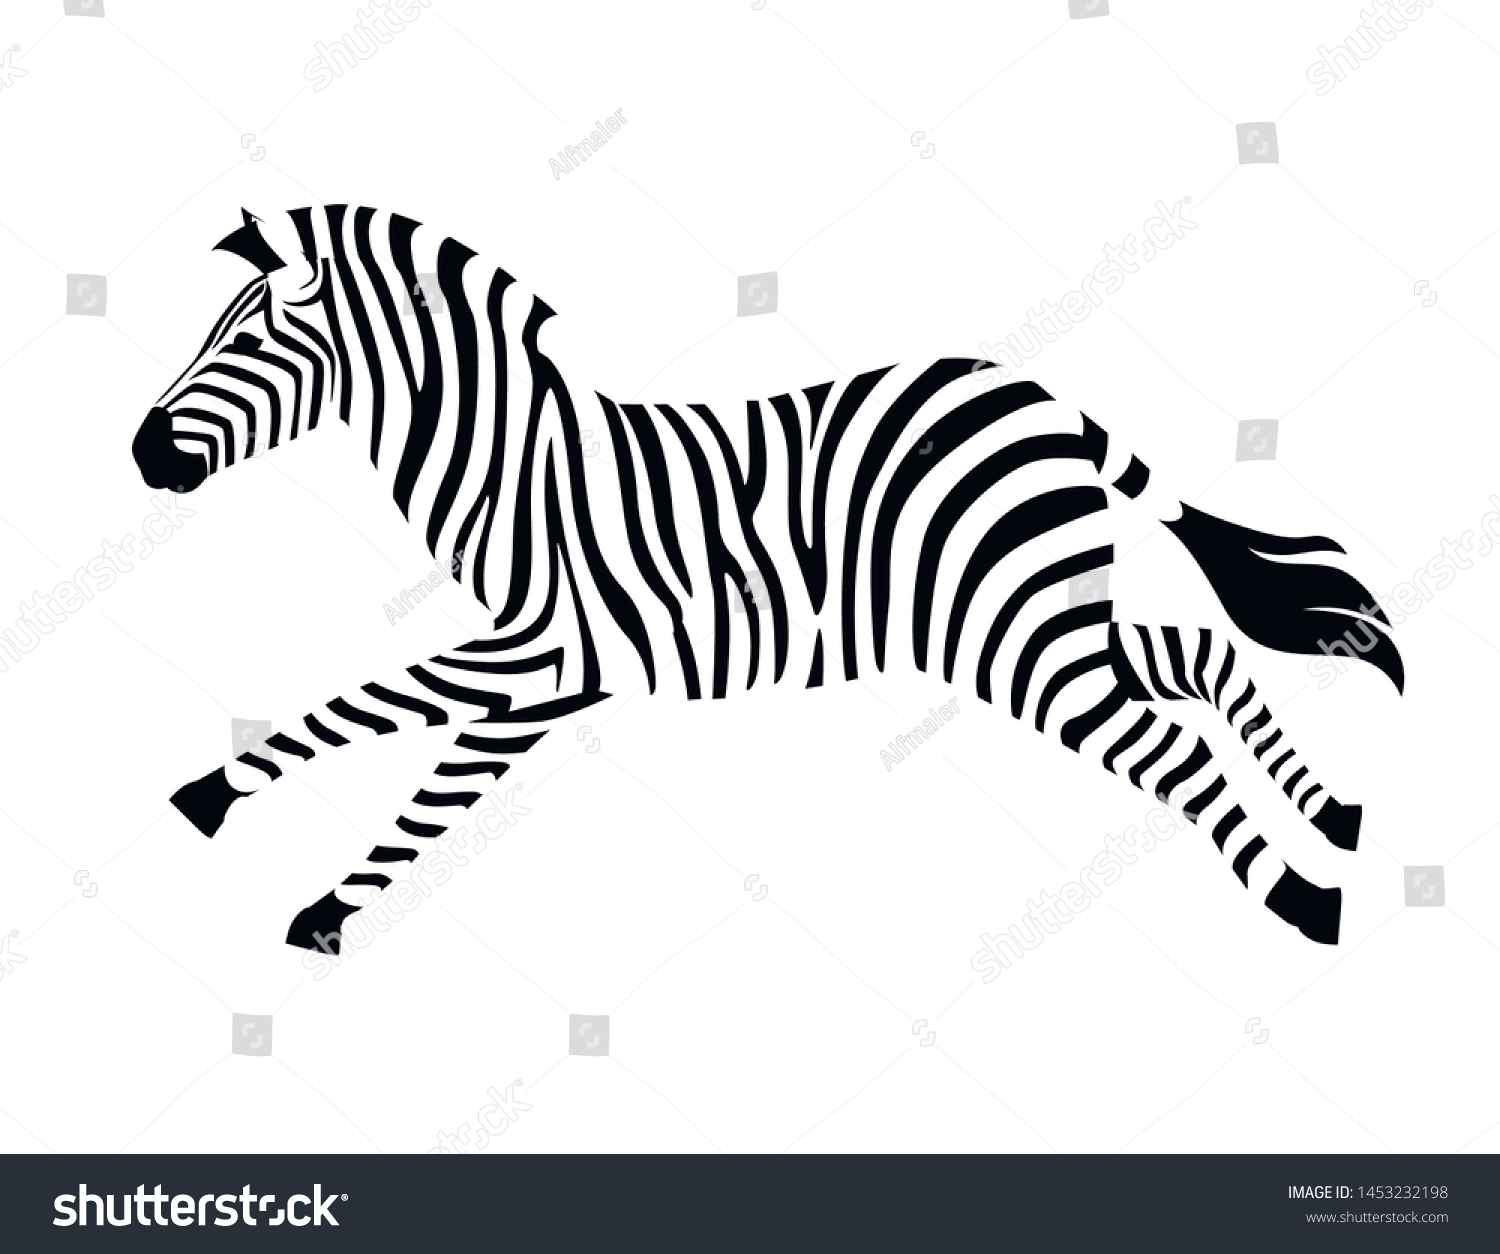 Body zebra Images, Stock Photos & Vectors | Shutterstock